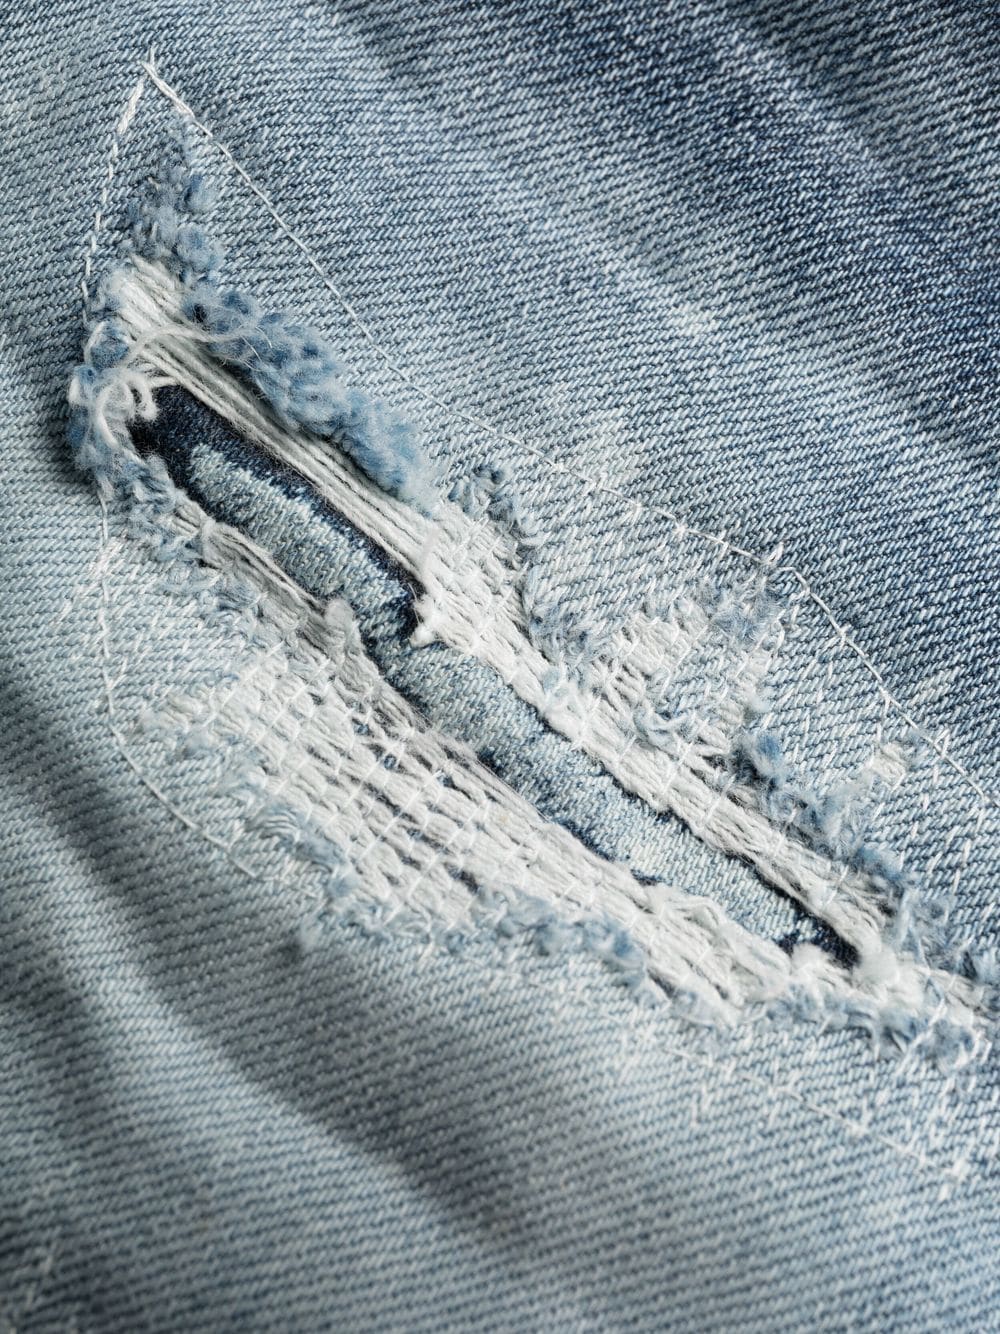 DSQUARED2 Distressed-effect Slim Jeans Blue - MAISONDEFASHION.COM